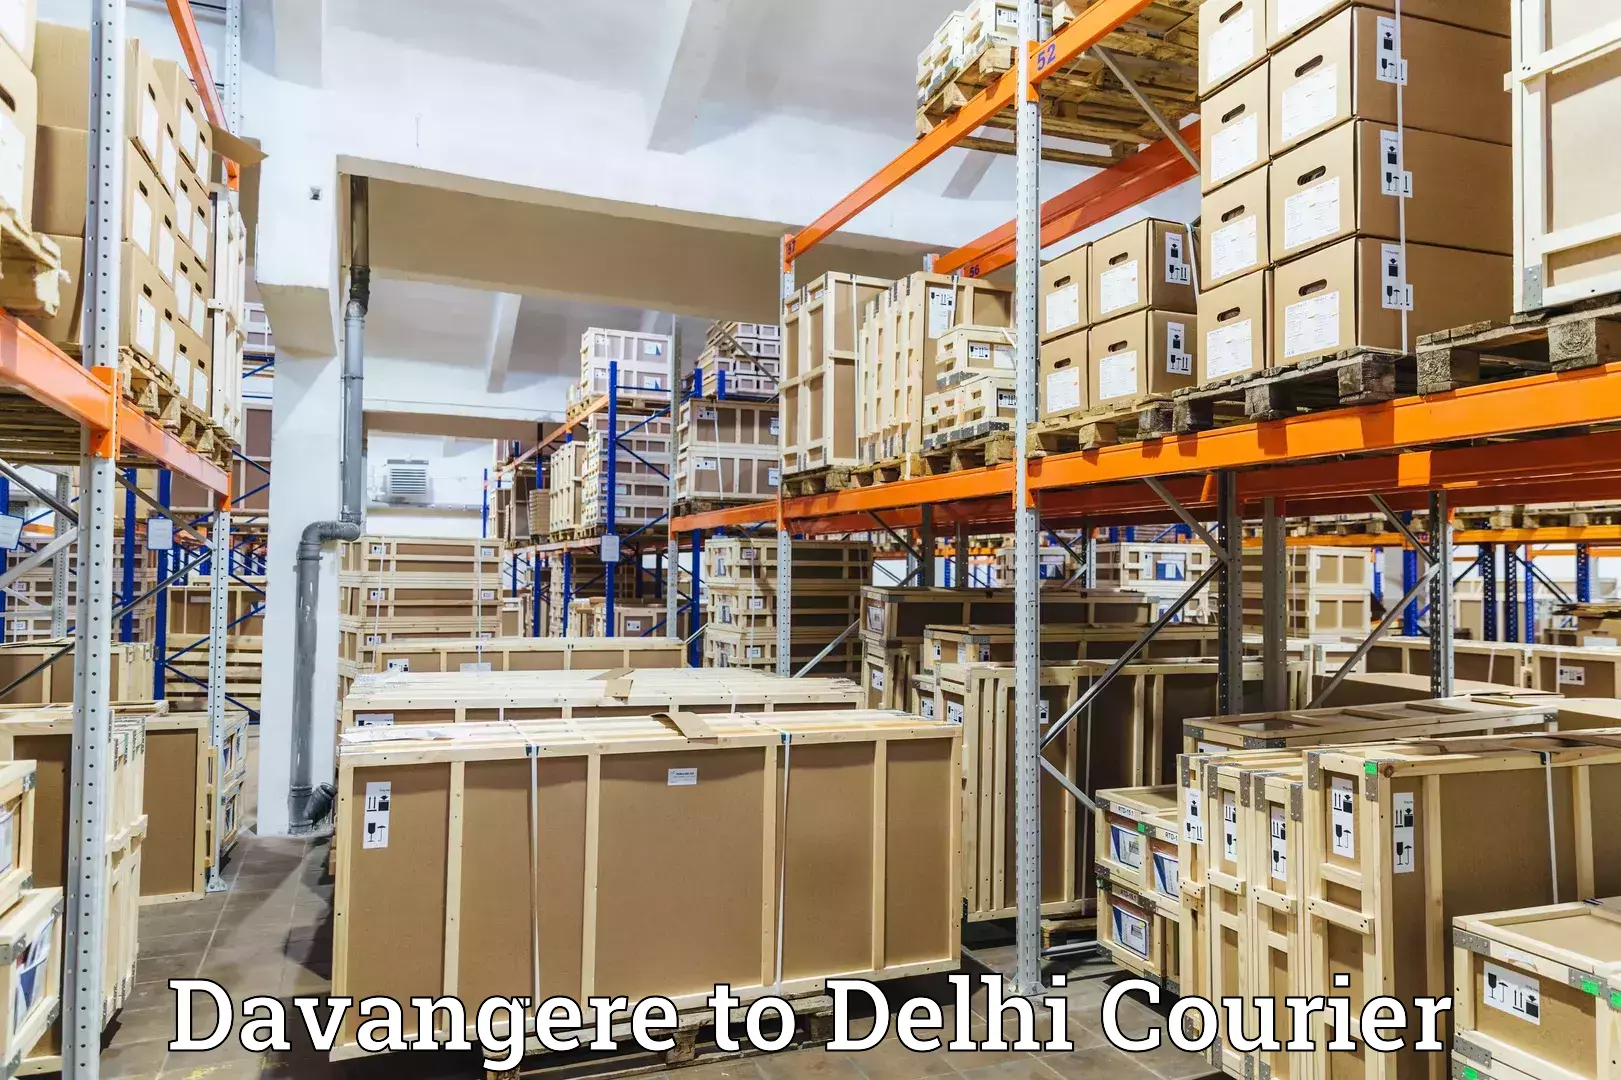 Parcel service for businesses Davangere to Jamia Millia Islamia New Delhi